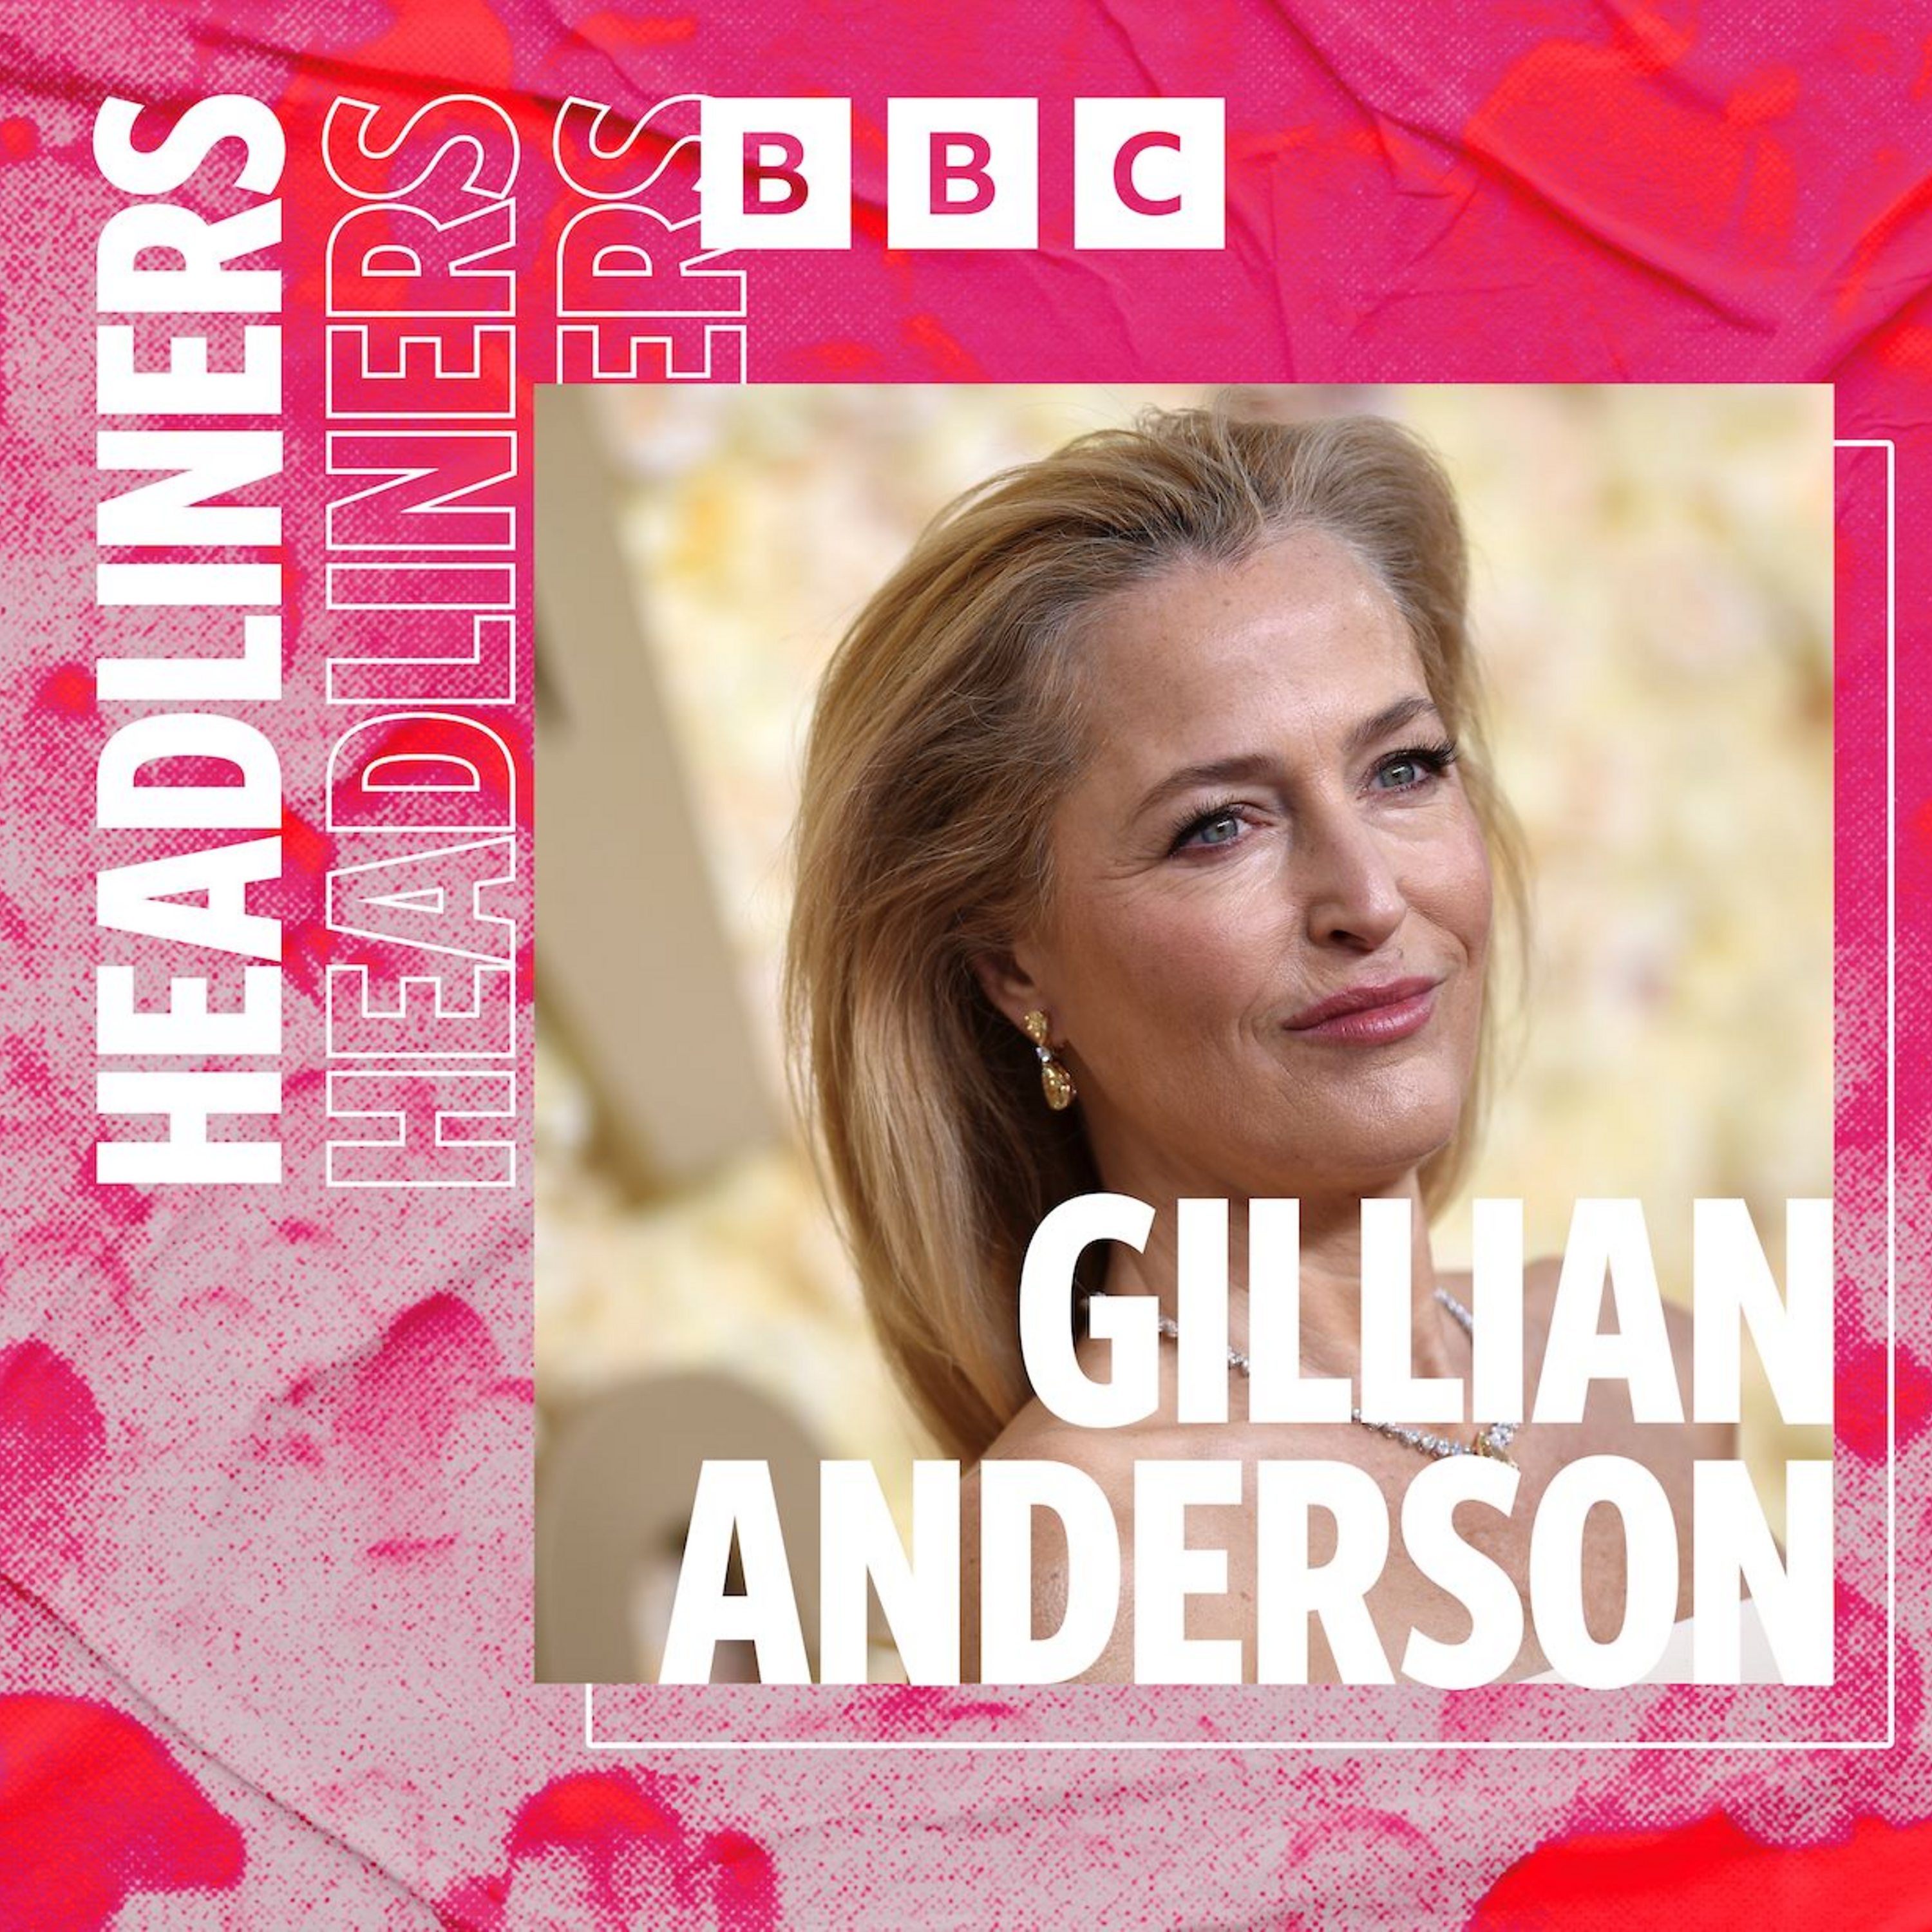 Gillian Anderson